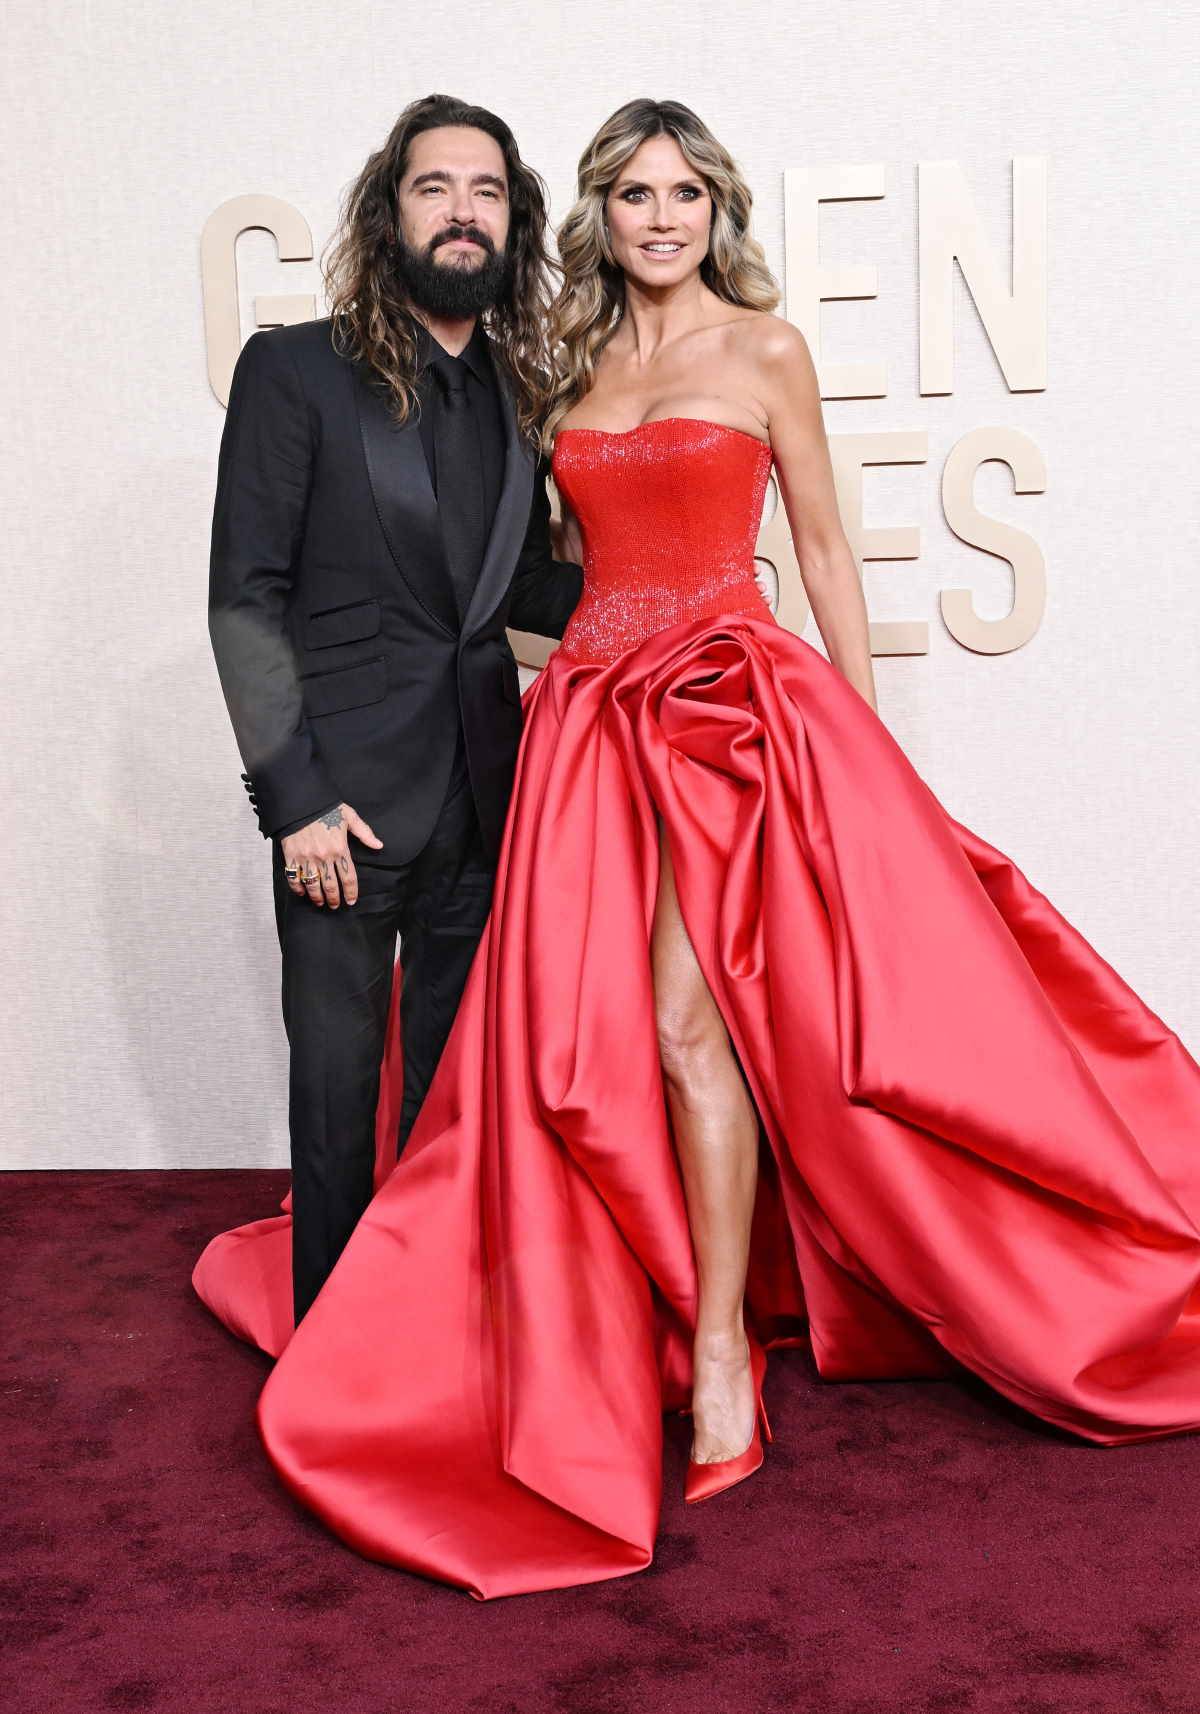 Sławne pary z showbiznesu, które dzieli duża różnica wieku. Miłość jest ślepa, także na metrykę. Oto 10 gwiazdorskich par, którym udało się stworzyć zgodny związek mimo dużej różnicy wieku. Tom Kaulitz i Heidi Klum 